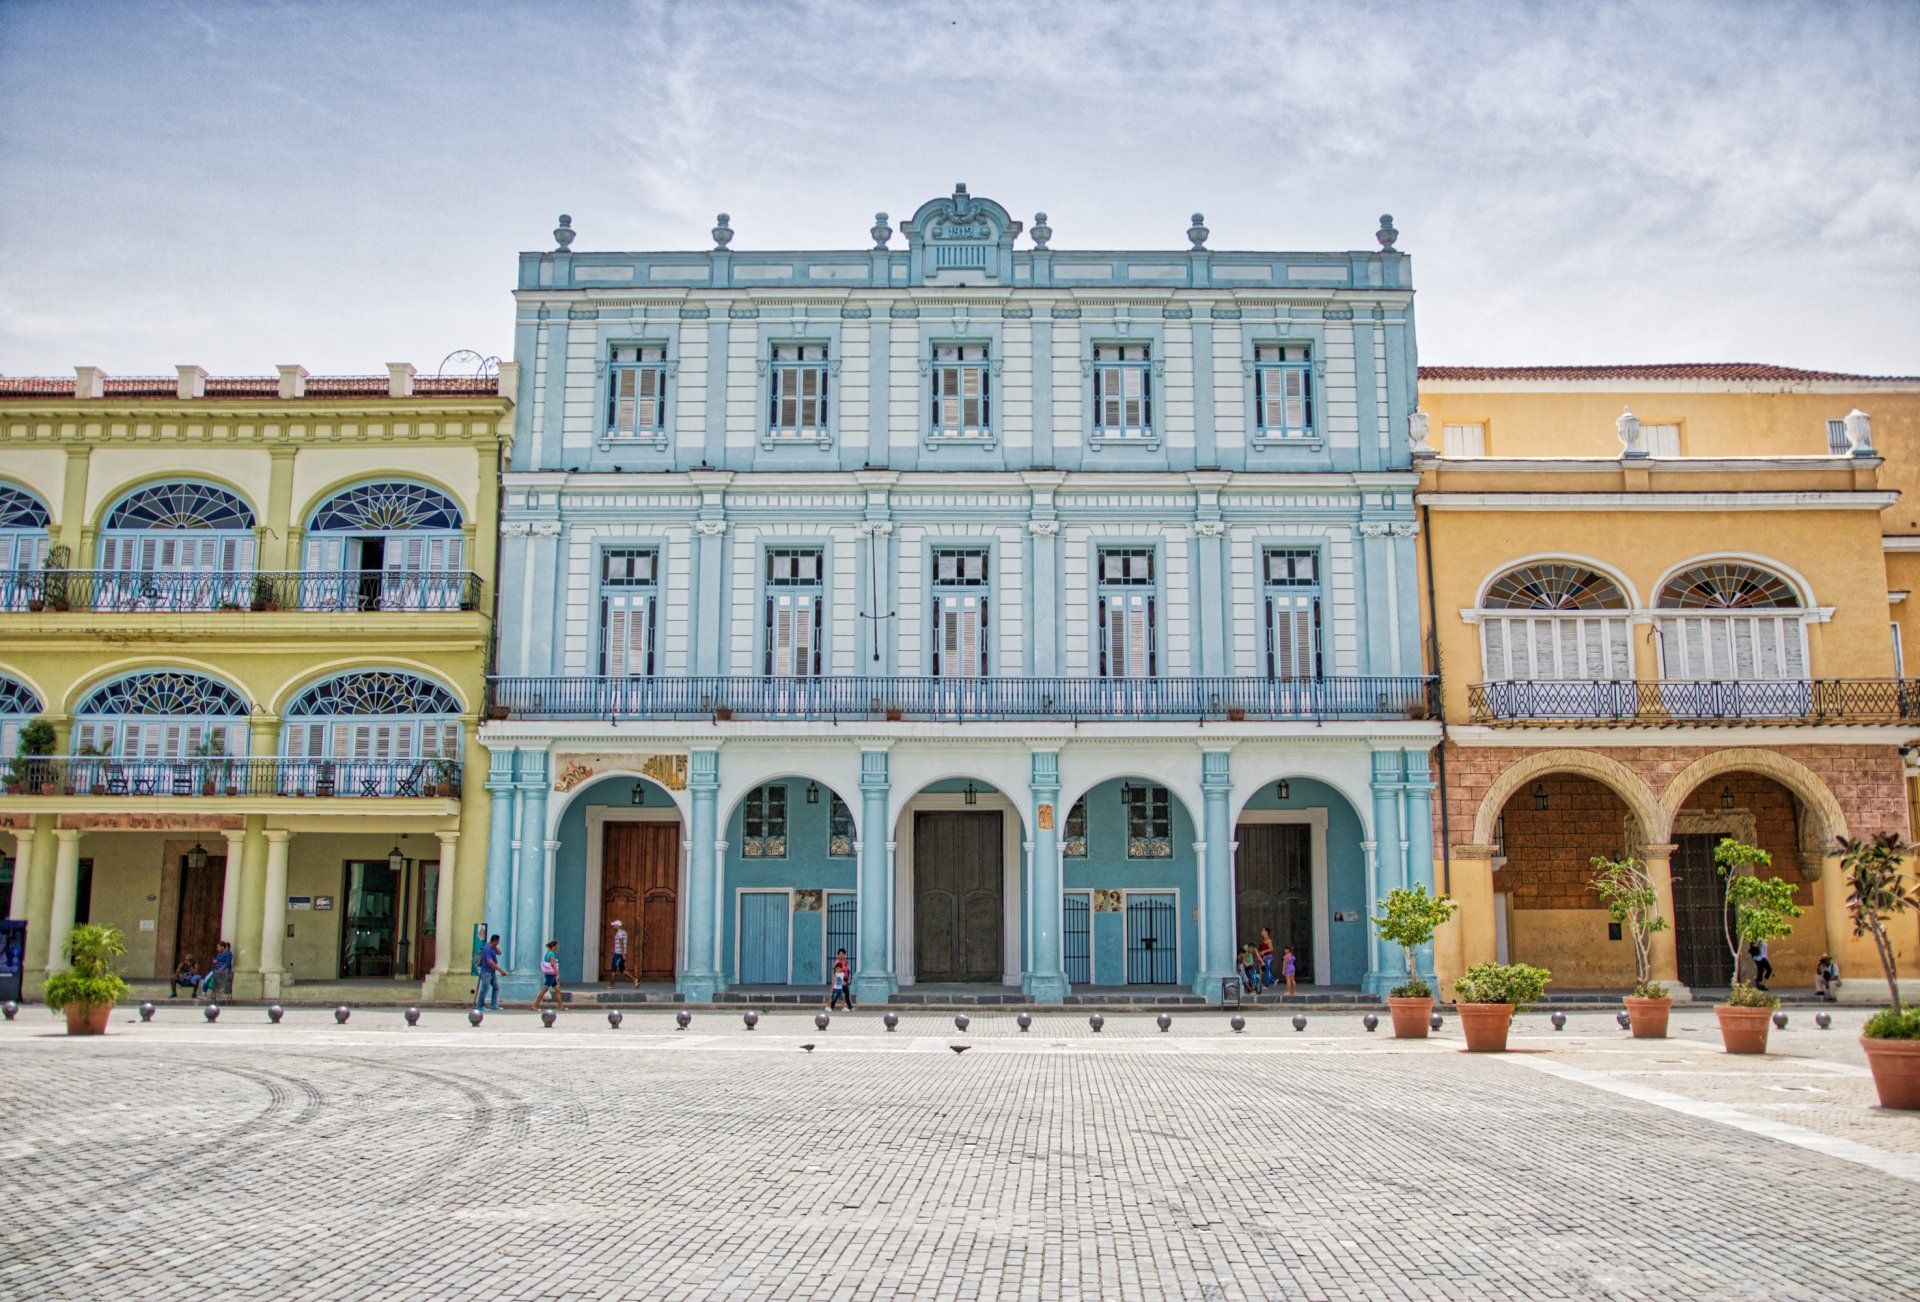 Una hilera de edificios coloridos están alineados en un cuadrado.